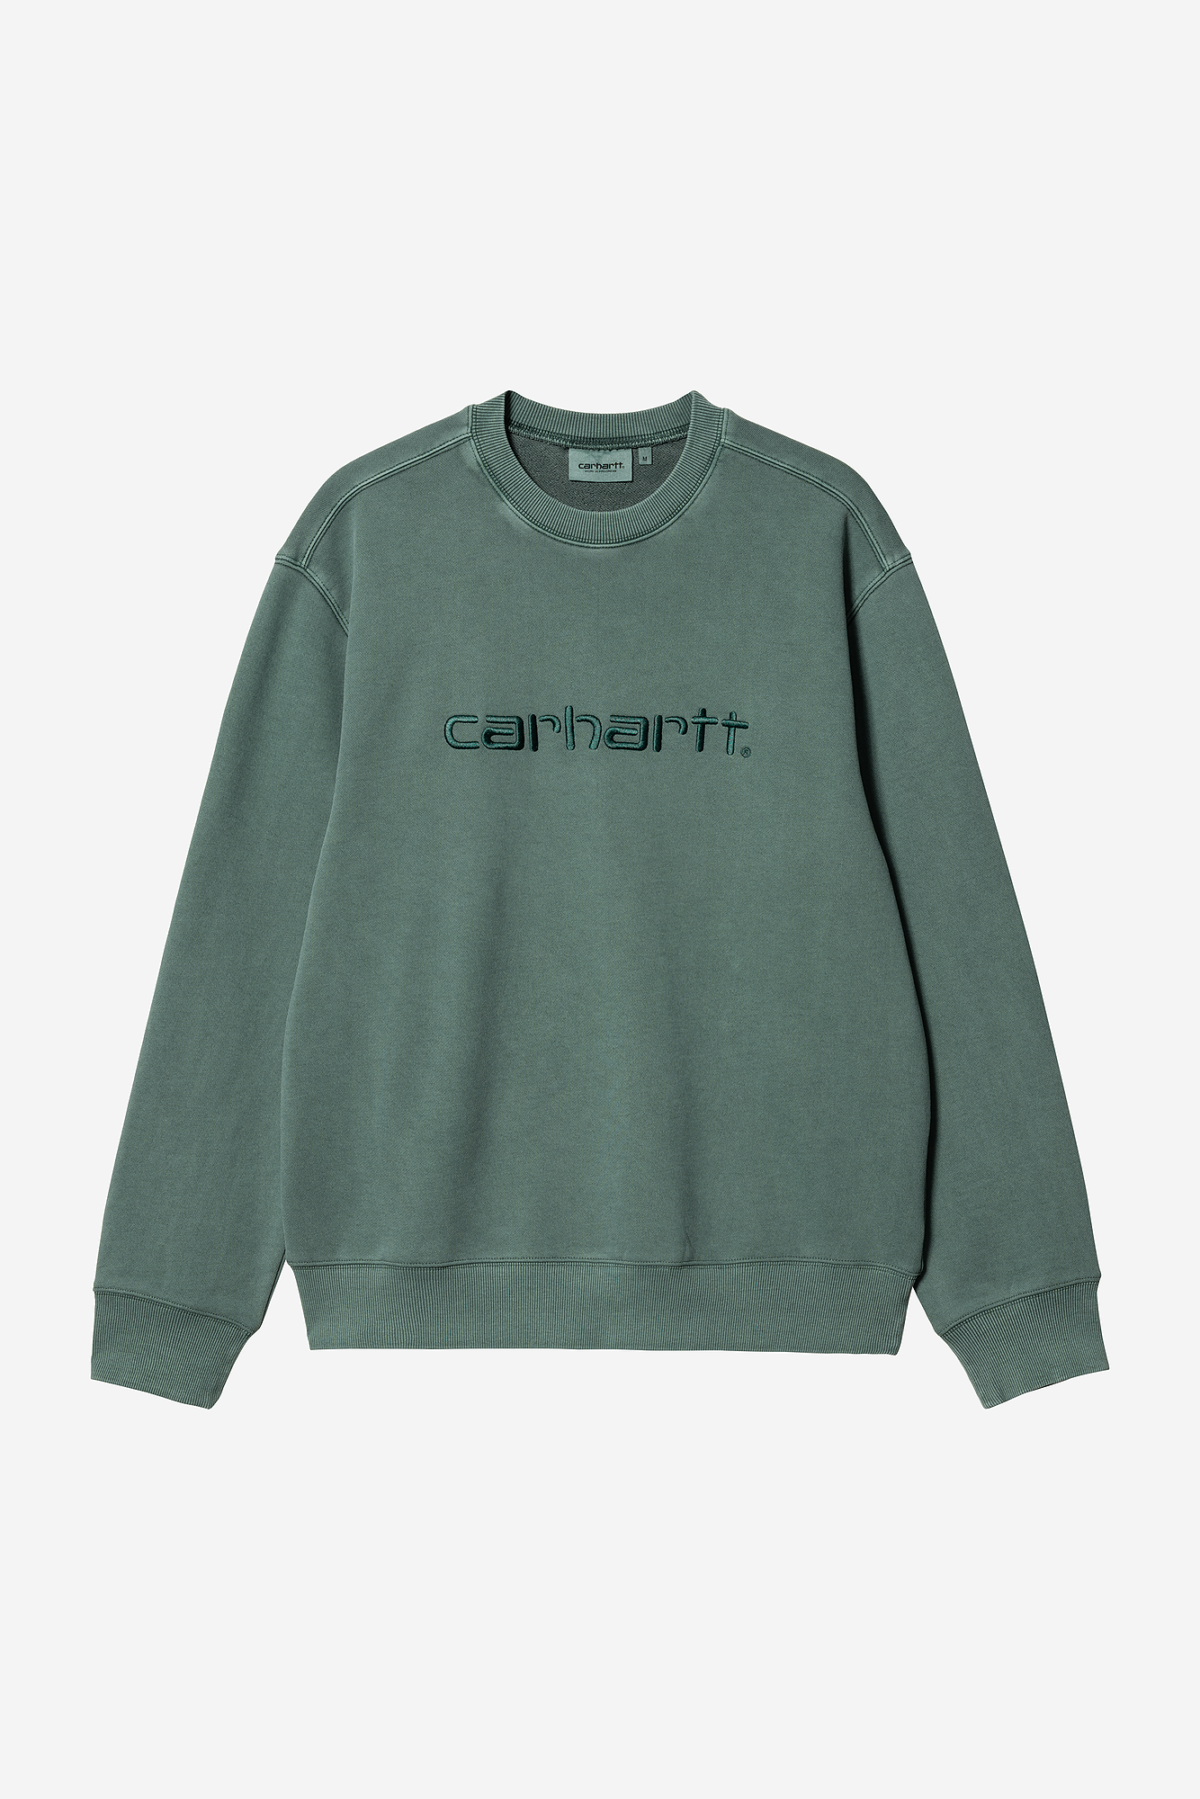 Carhartt WIP Sudadera verde sin capucha logo en el pecho- Comprar Online